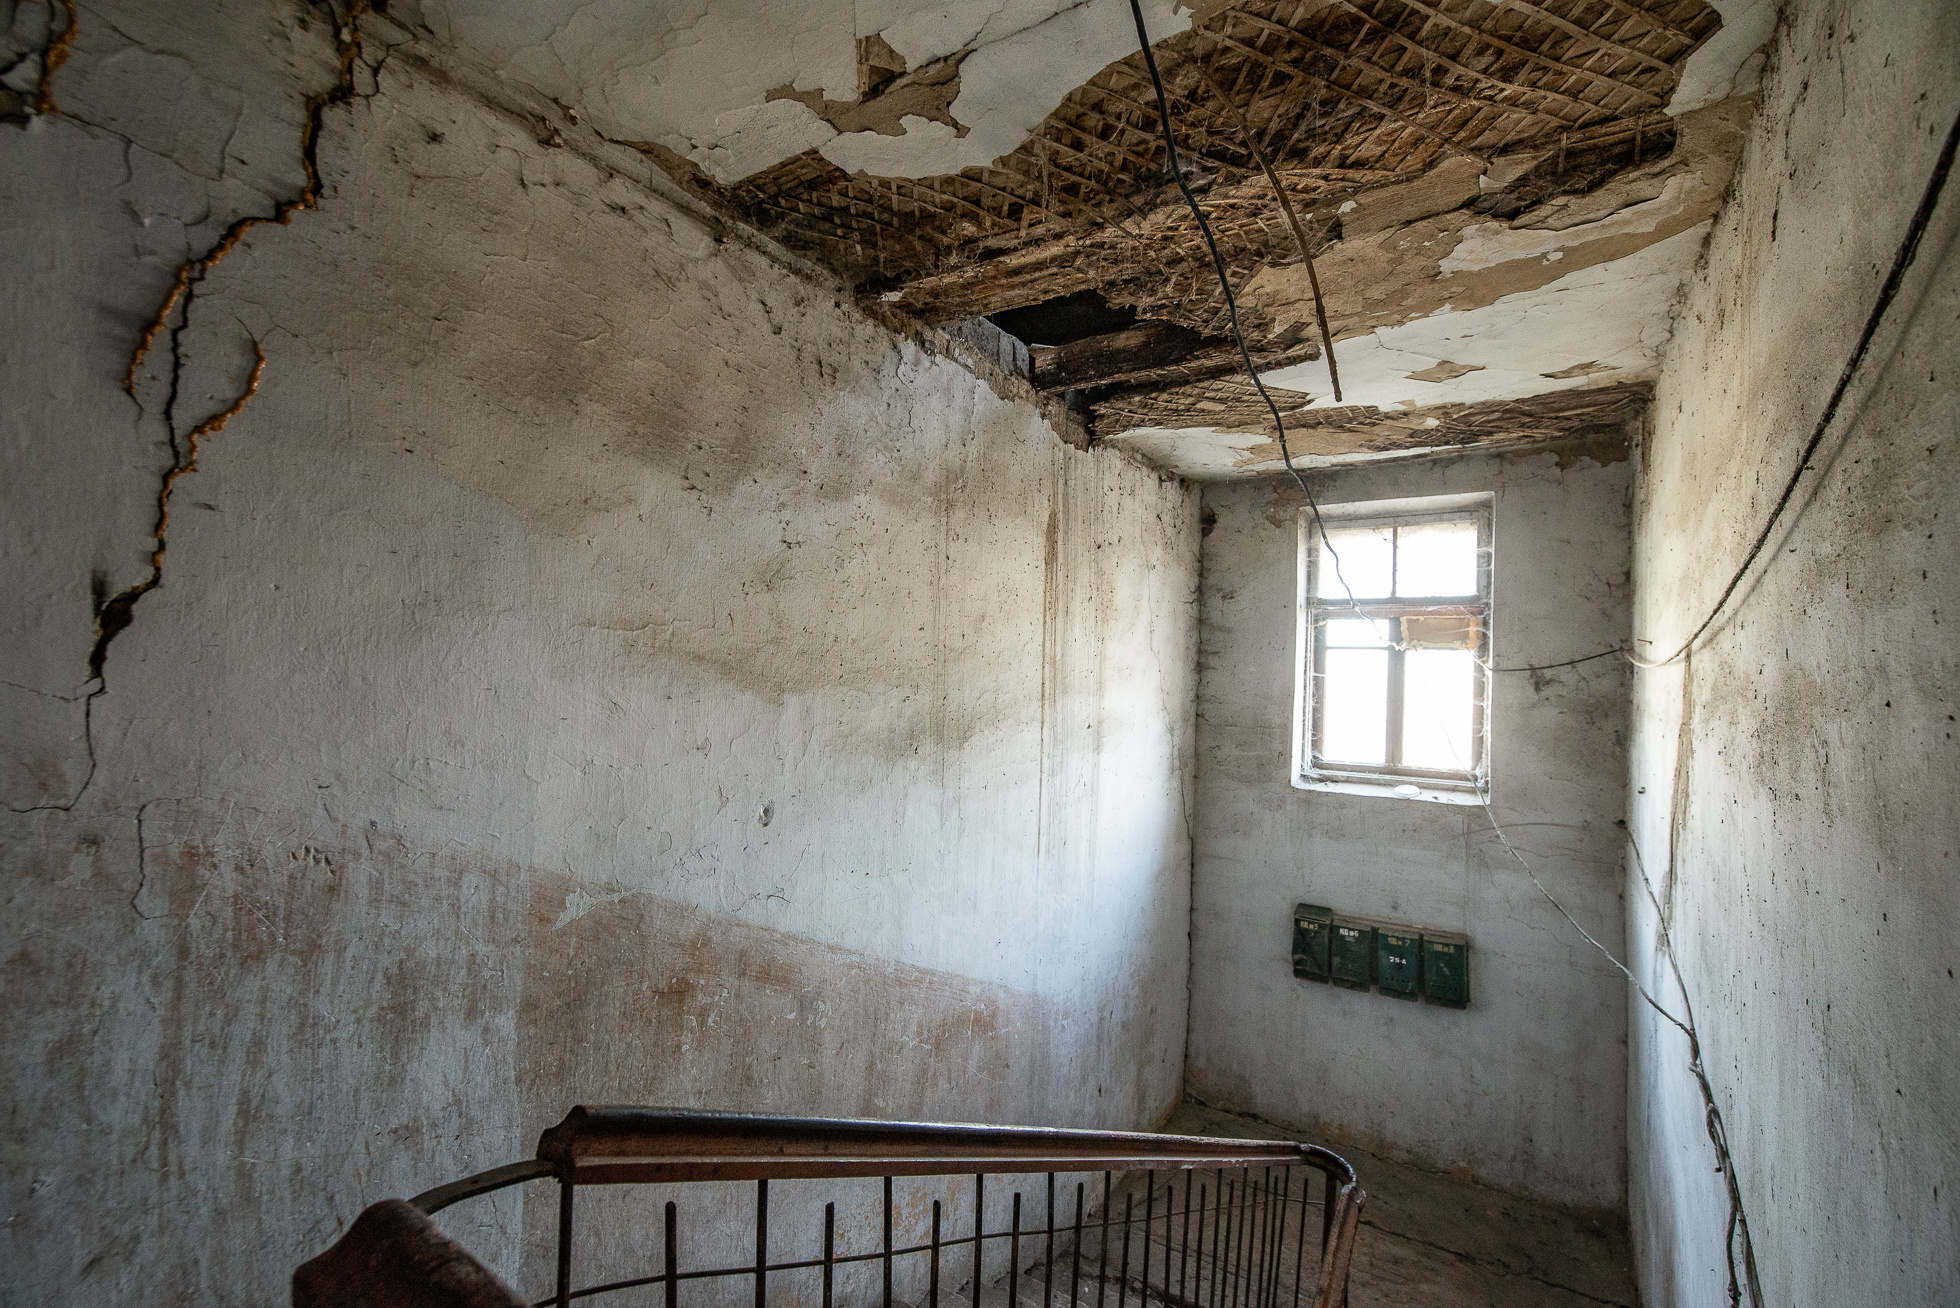 4 и 5 дома пустые. Квартиры на Урале многодетным. Семья живет в разрушенном доме деревянном.